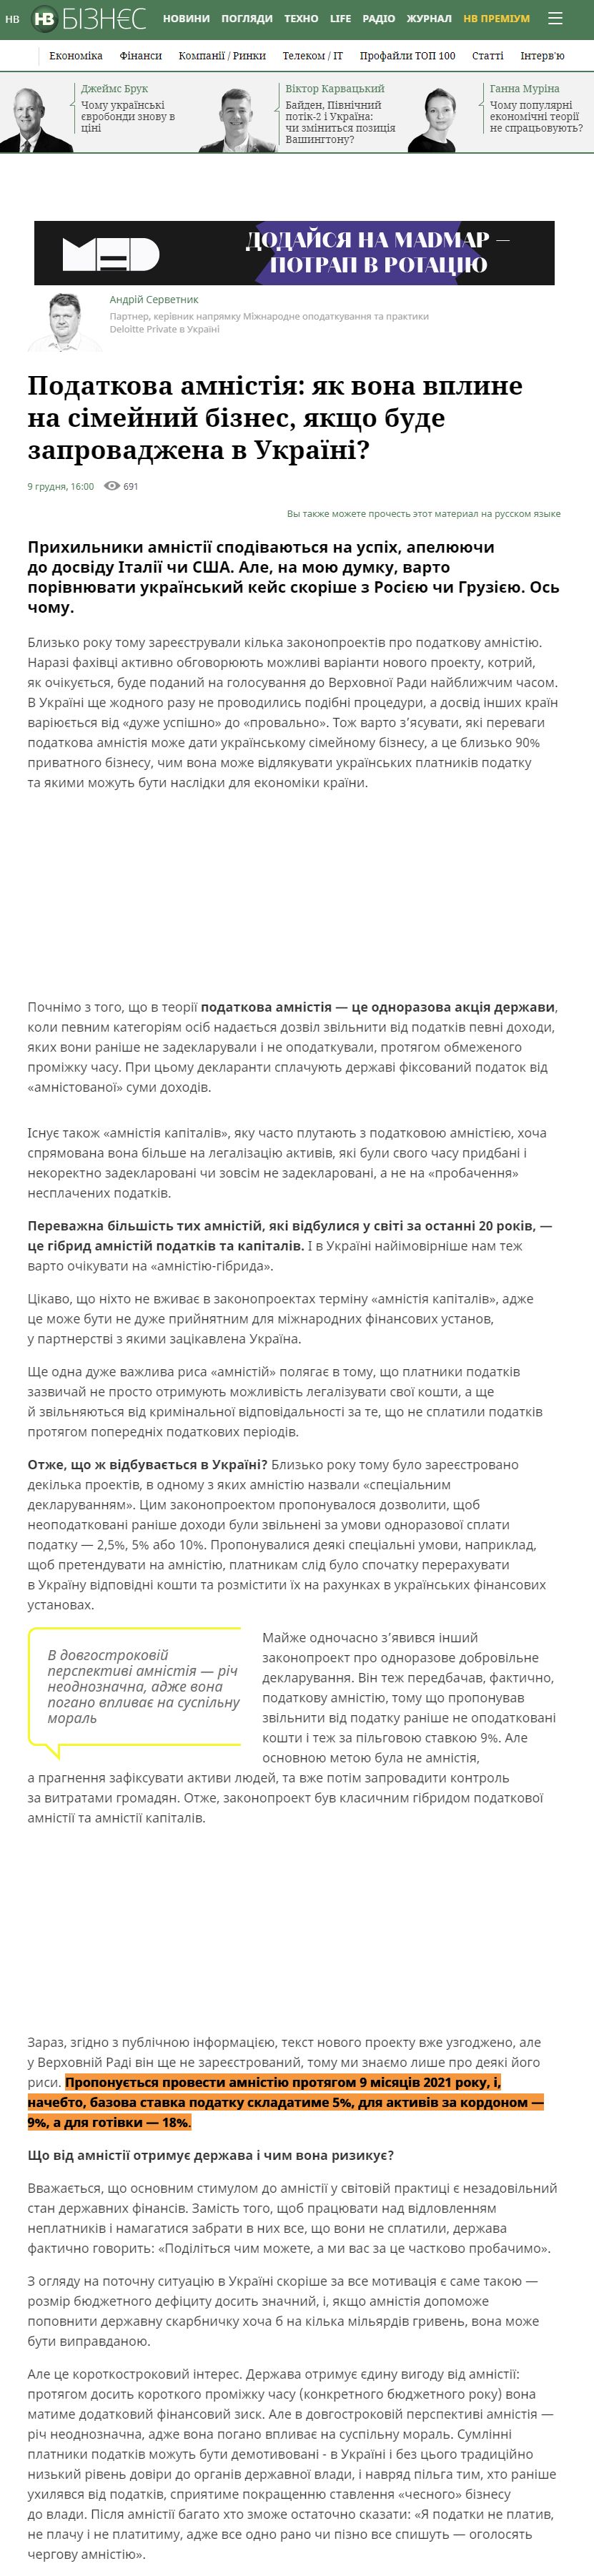 https://nv.ua/ukr/biz/experts/podatkova-amnistiya-chi-spracyuye-v-ukrajini-yak-vpline-na-simeyniy-biznes-novini-ukrajini-50129223.html